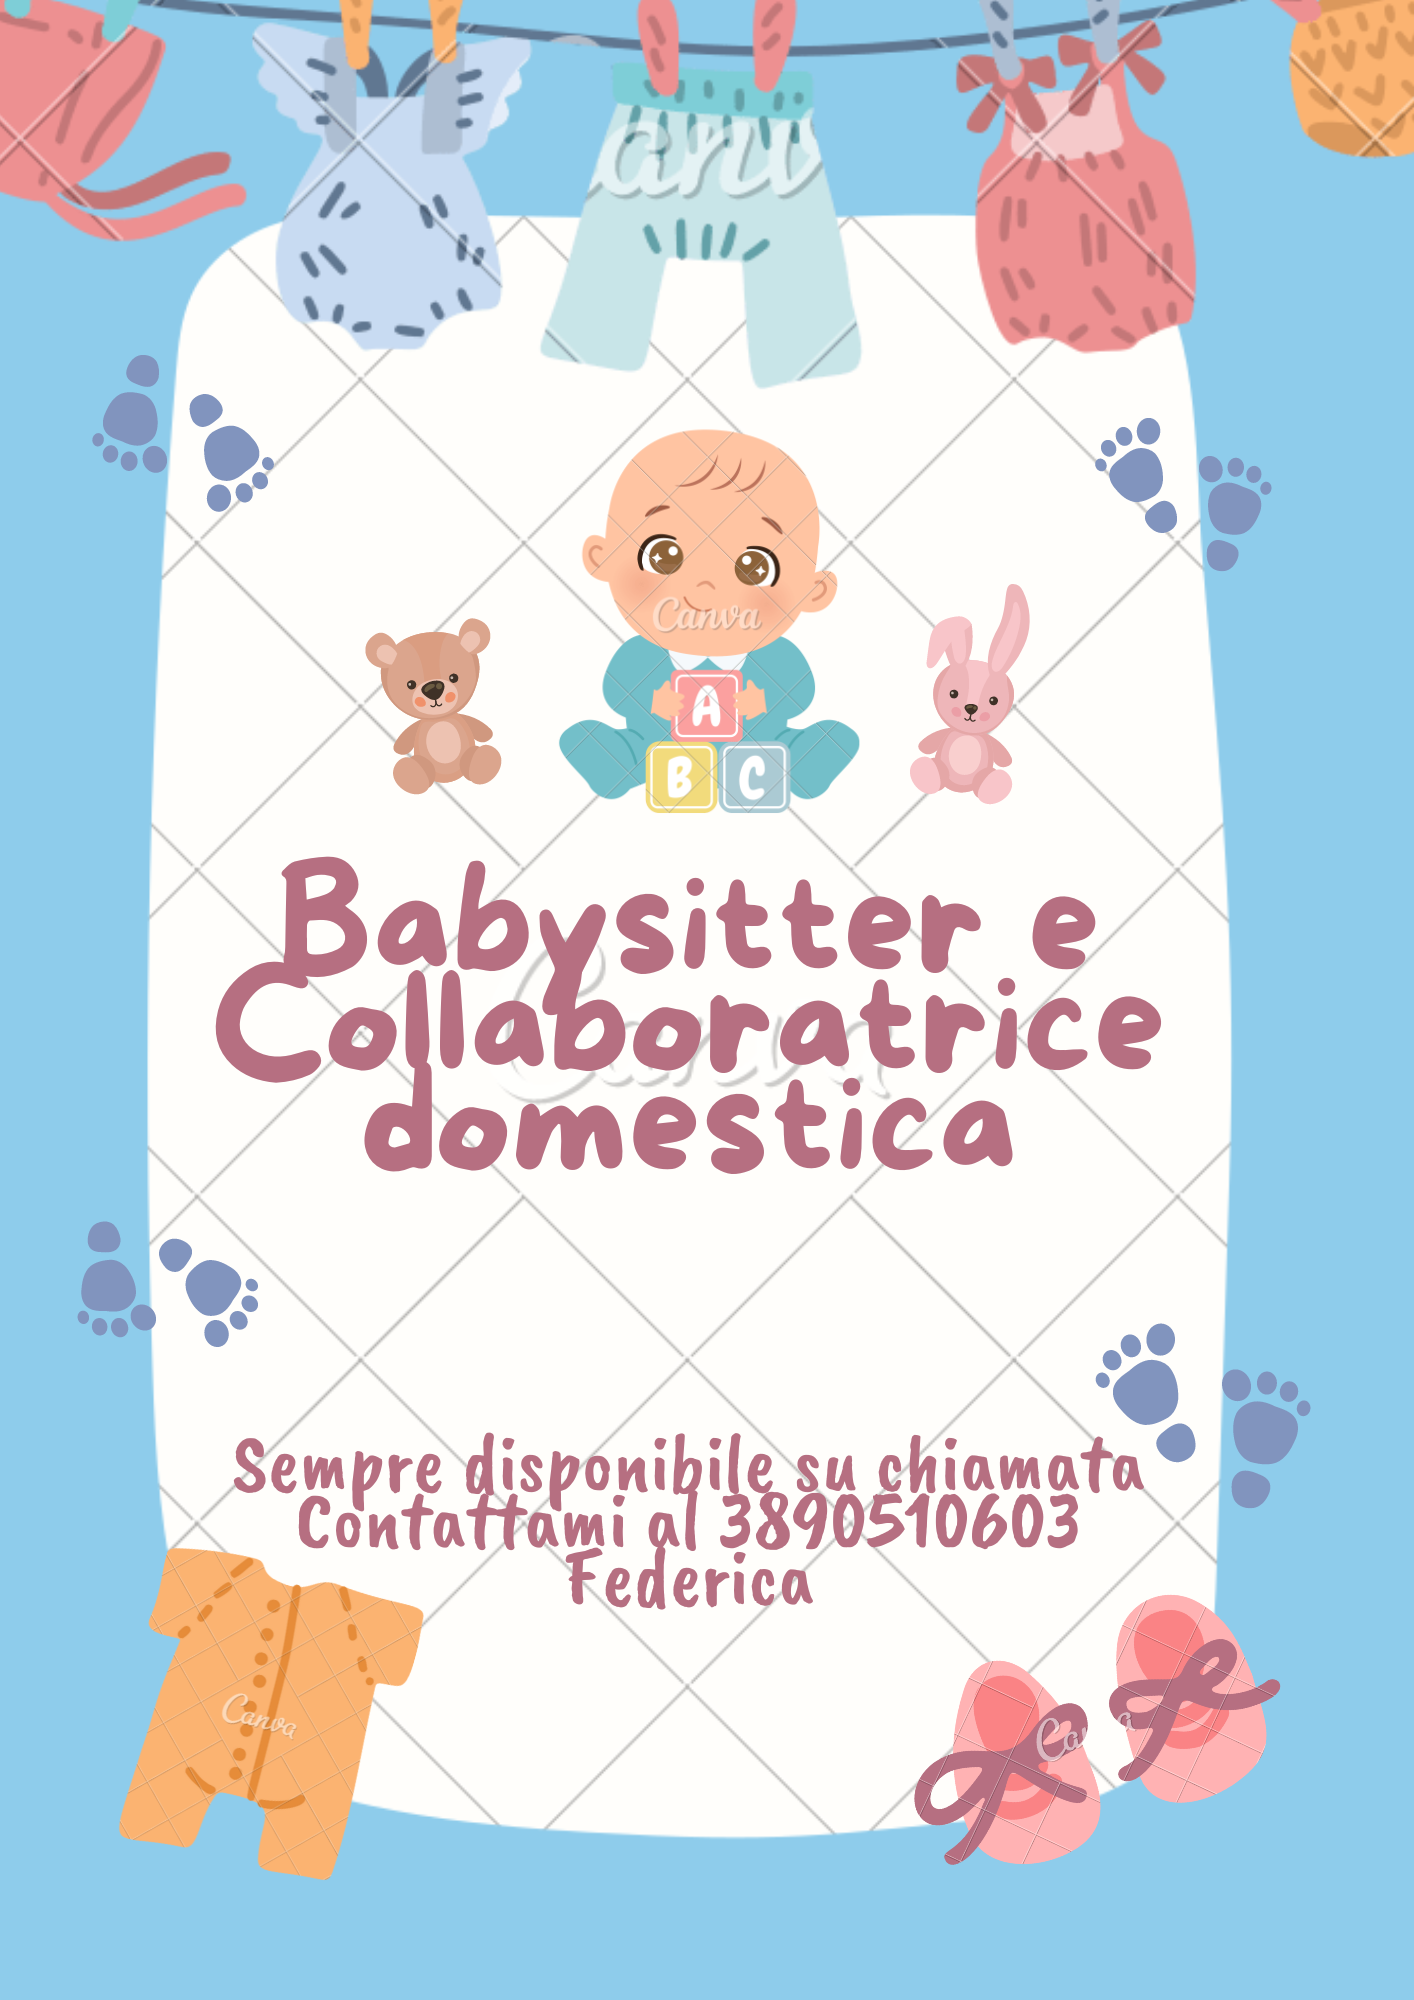 Baby sutter e collaboratice domestica